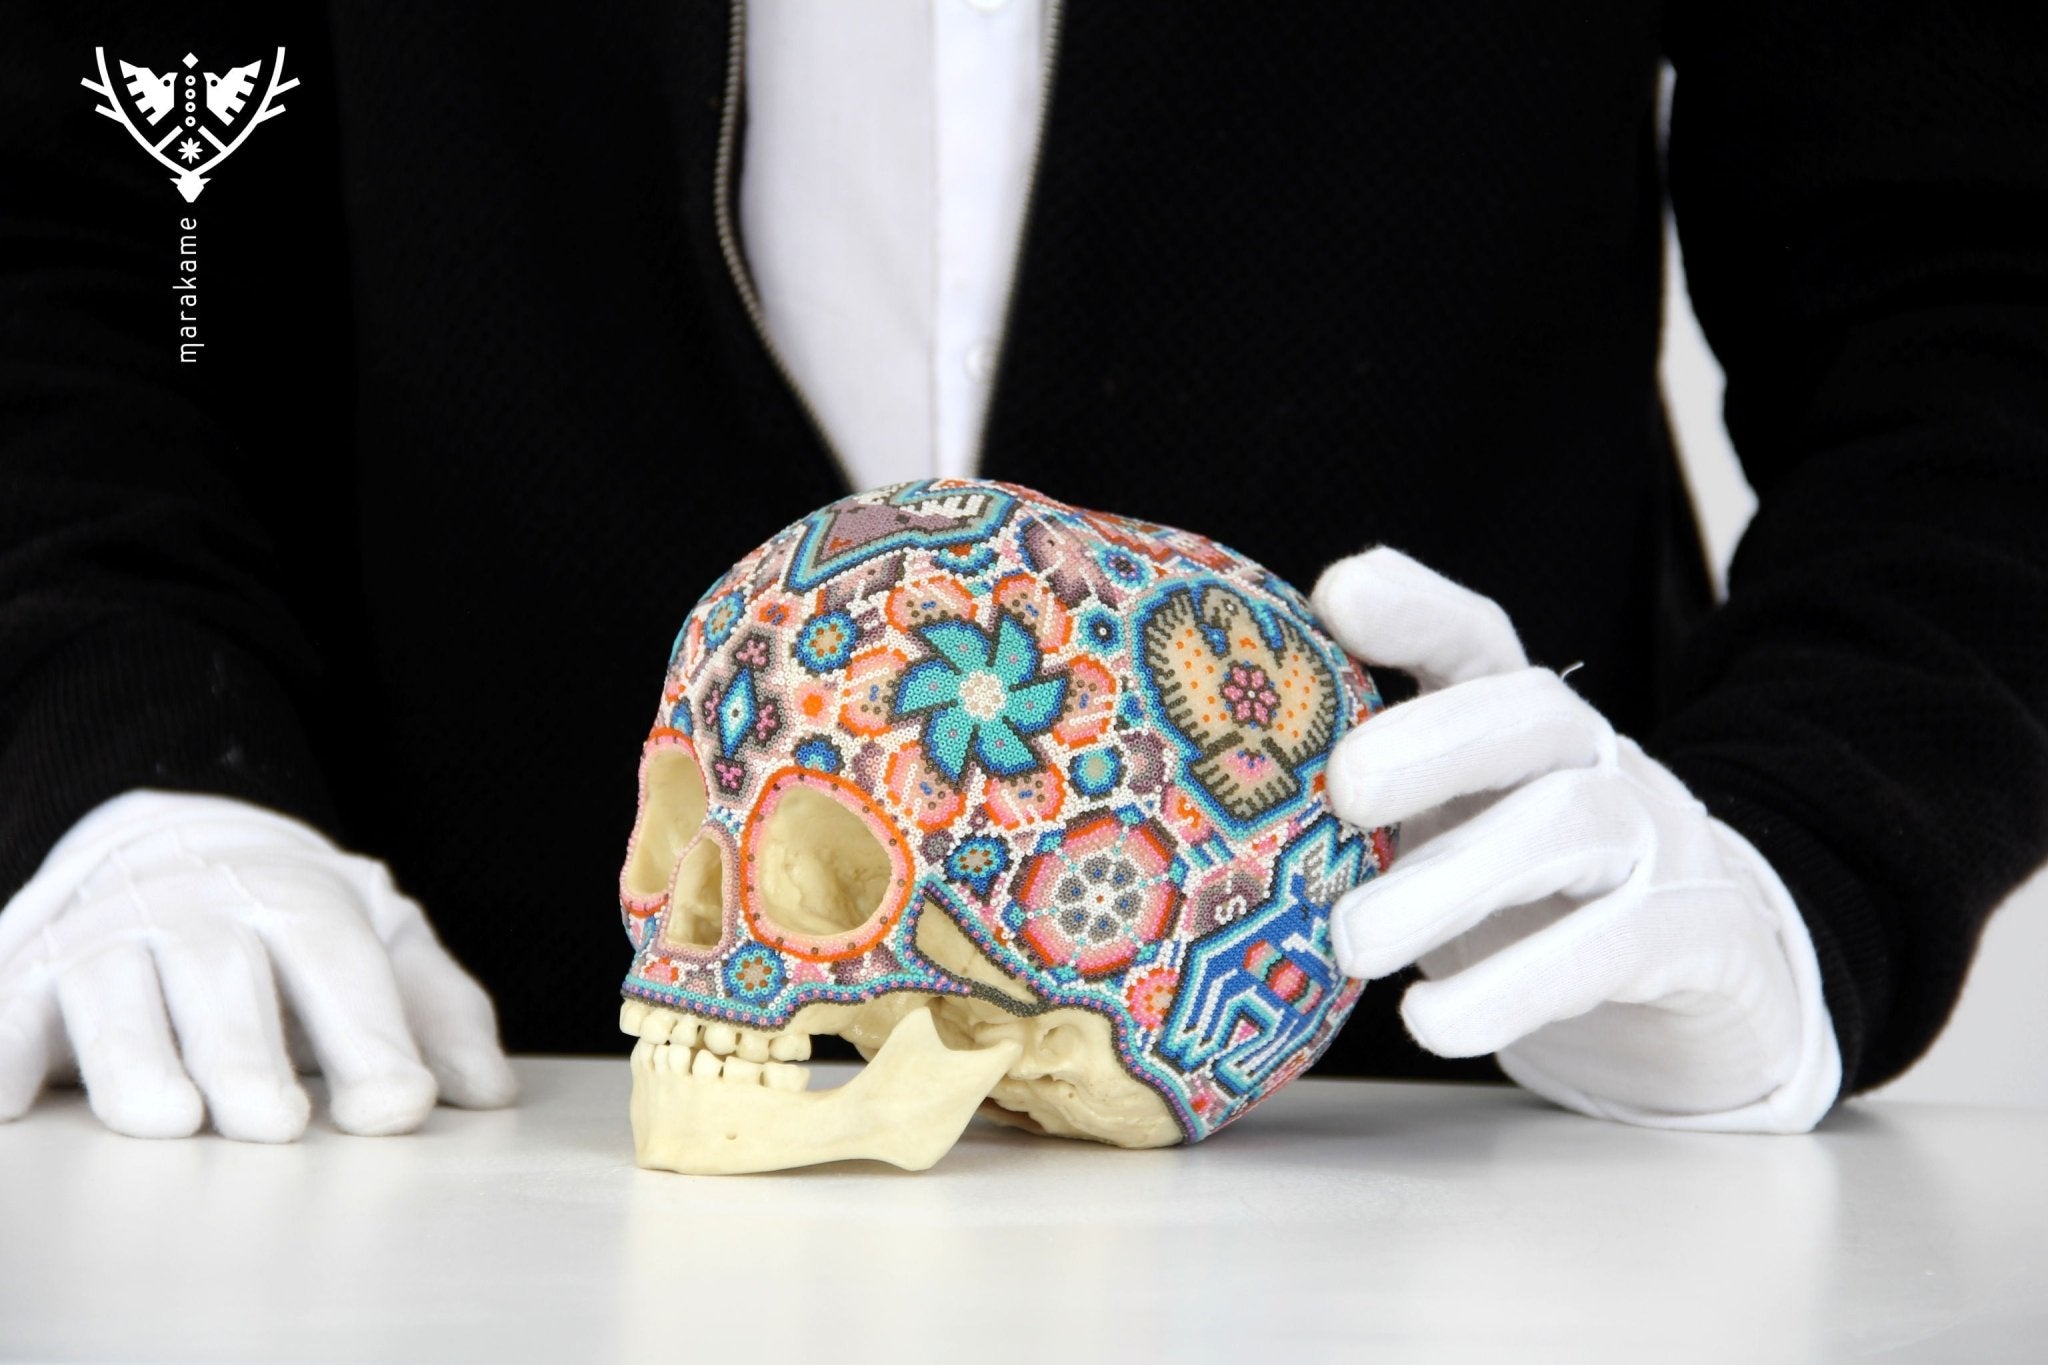 Cráneo Hiperrealista de Niño Arcaico de hace 6000 años "Ik+Ri" - Arte Huichol - Marakame